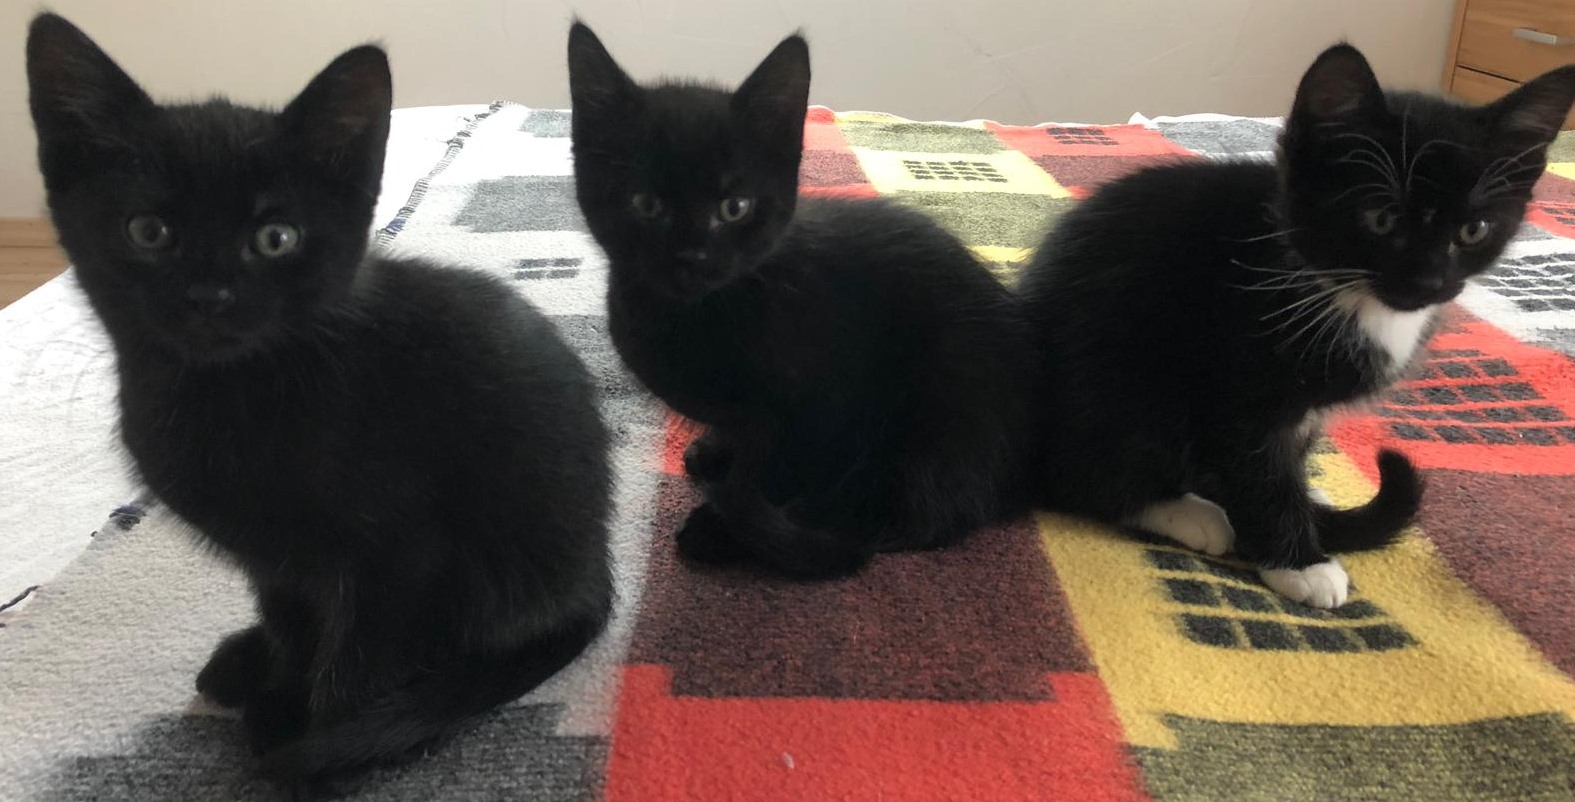 drei kleine schwarze Katzen sitzen auf einer karierten Decke